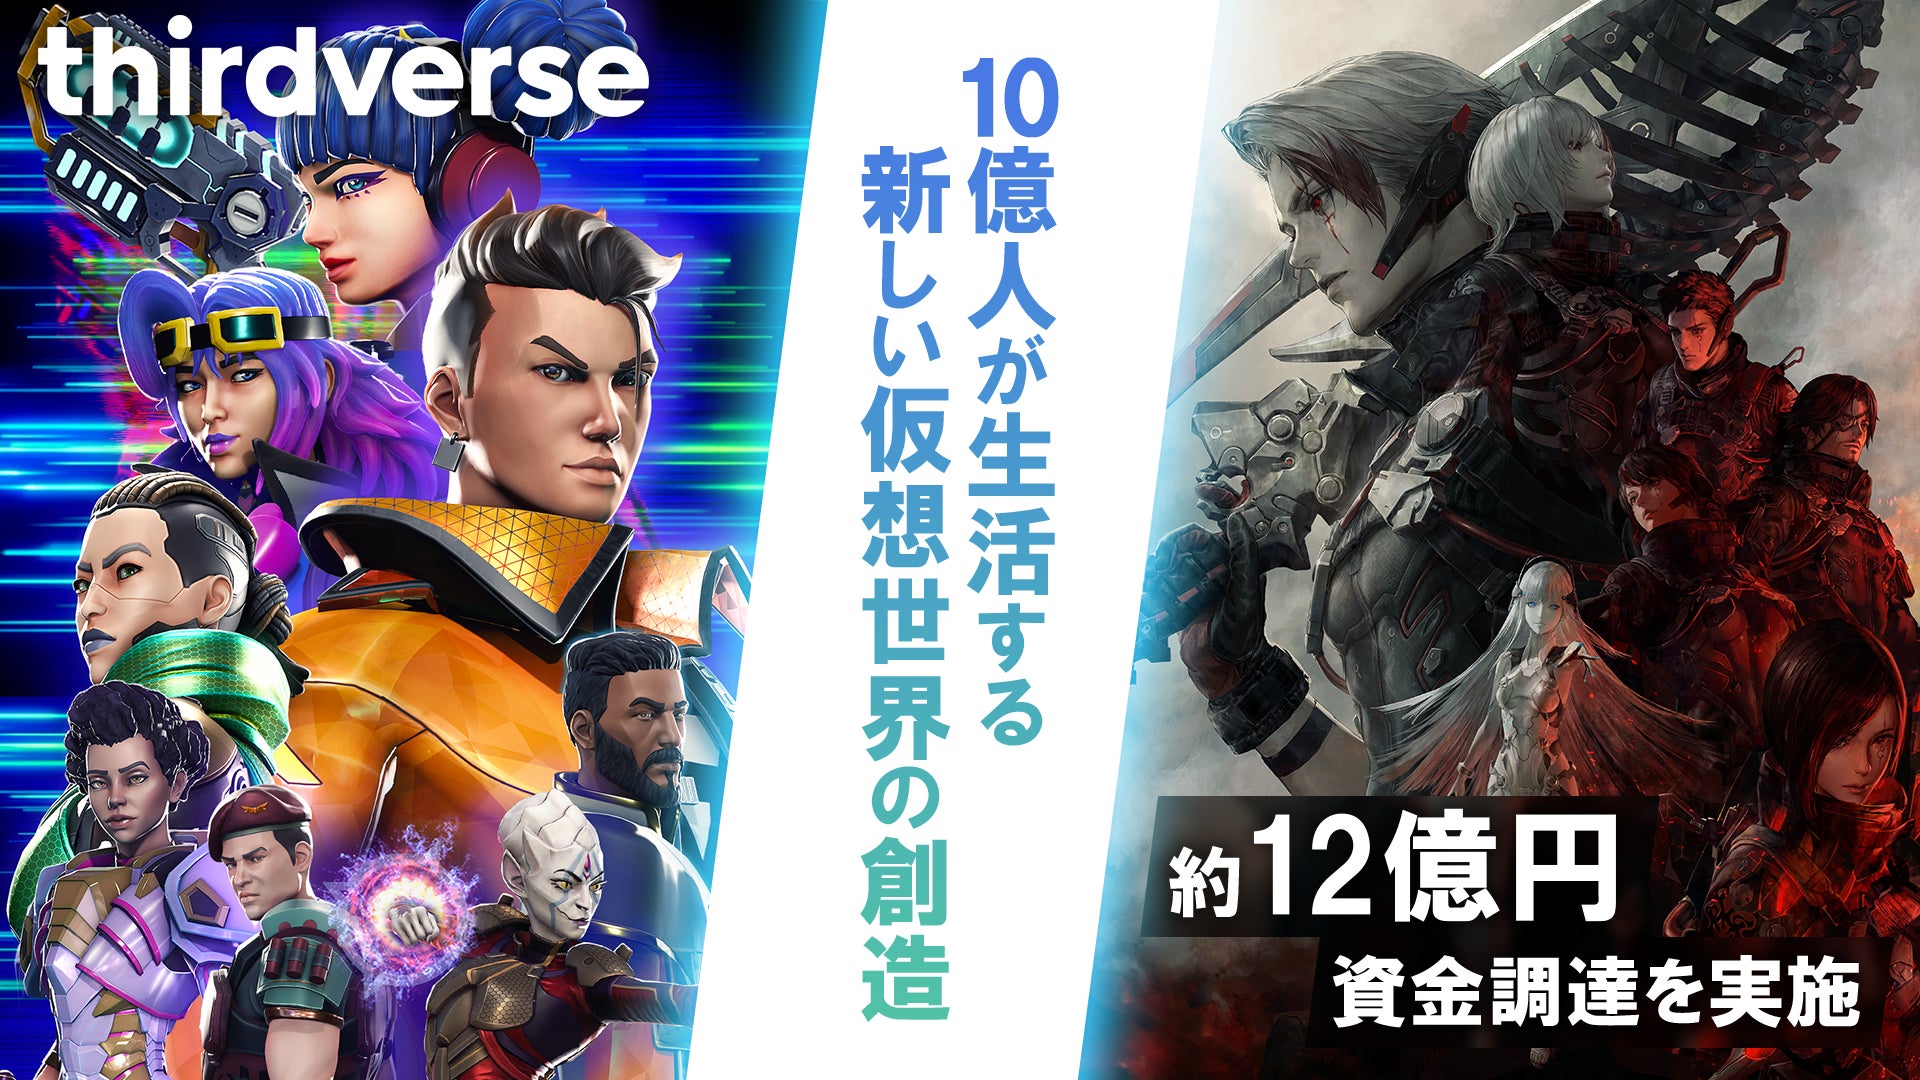 日米でVRゲーム開発を行うThirdverse、約12億円の資金調達を実施